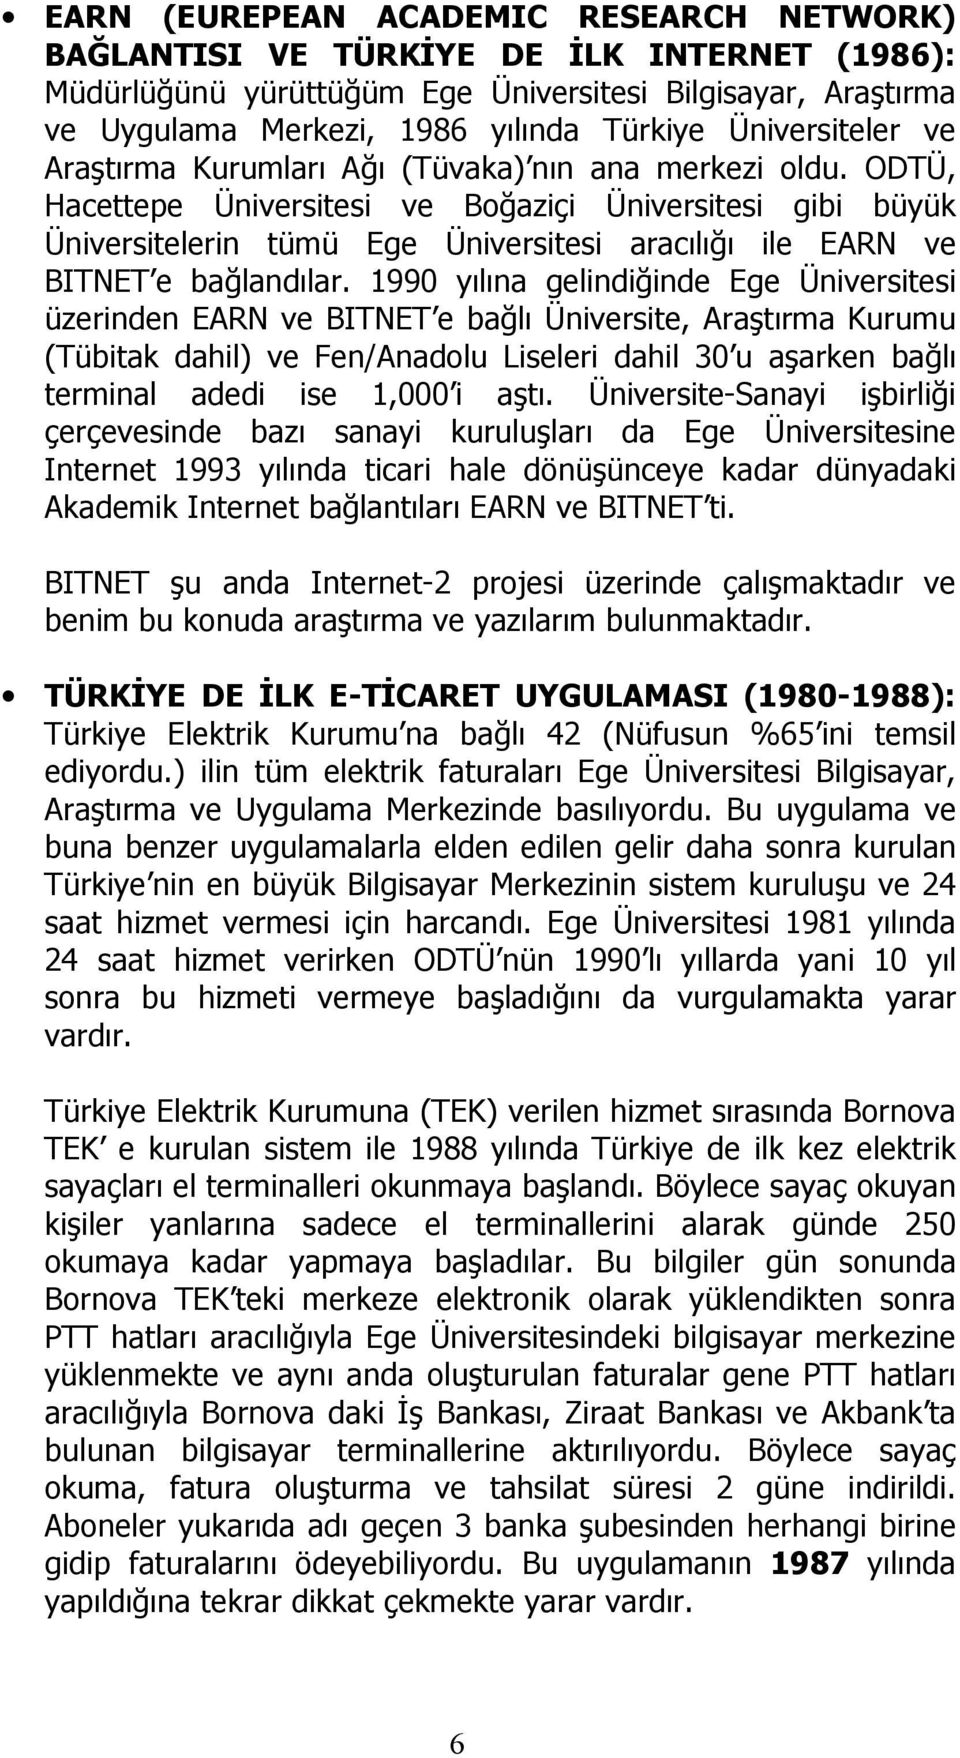 ODTÜ, Hacettepe Üniversitesi ve Boğaziçi Üniversitesi gibi büyük Üniversitelerin tümü Ege Üniversitesi aracılığı ile EARN ve BITNET e bağlandılar.